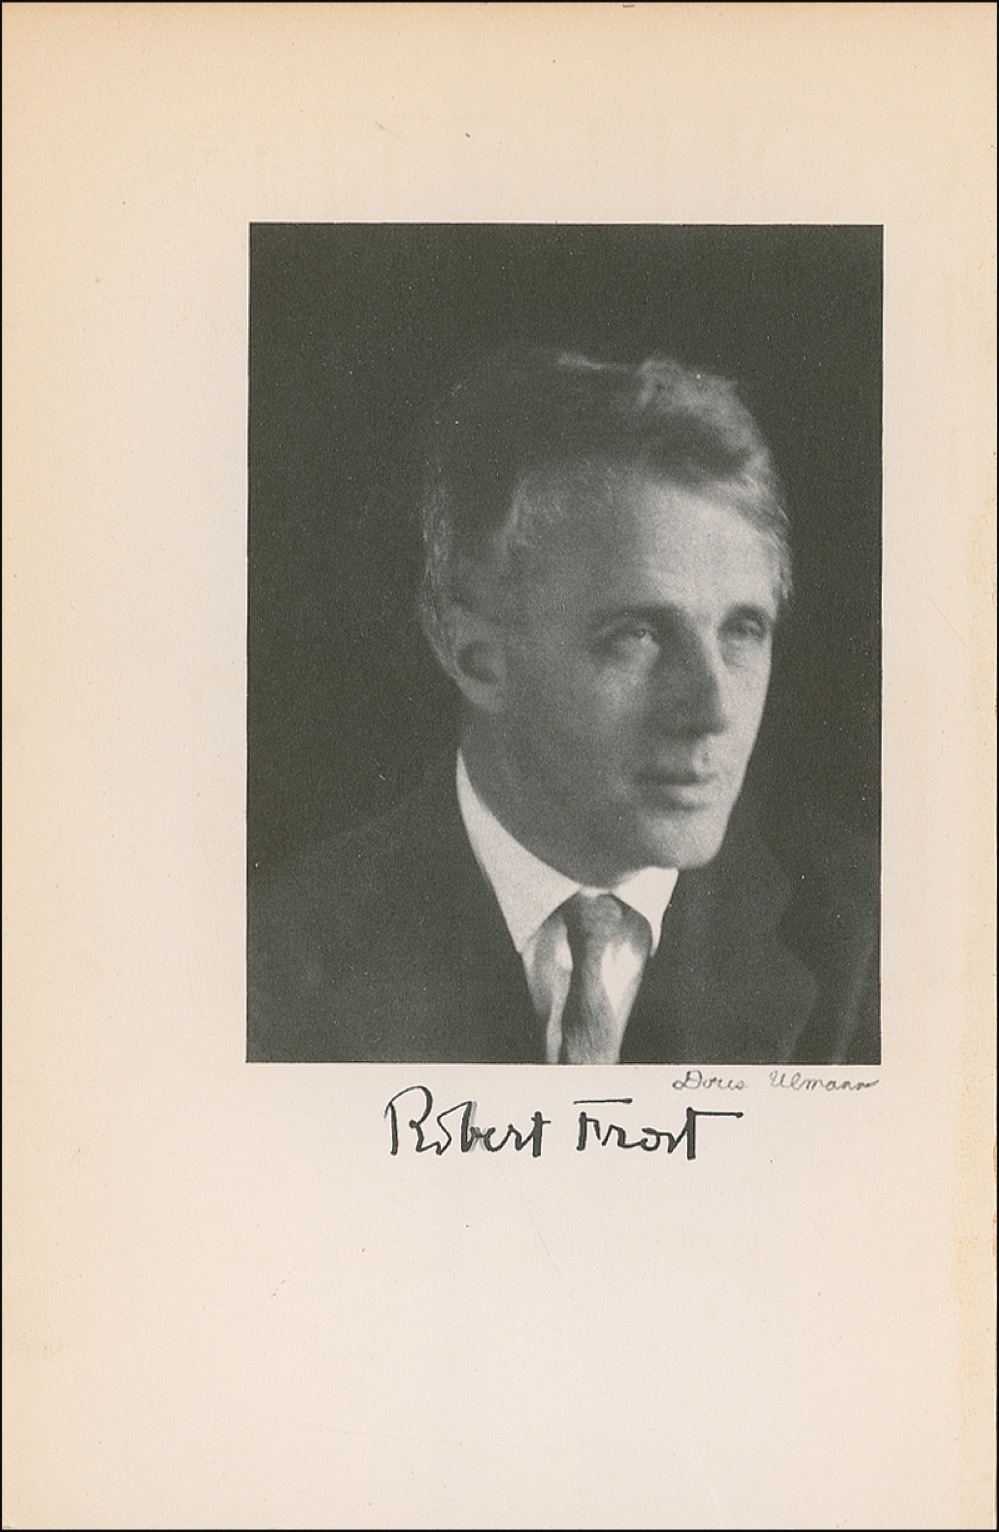 Lot #429 Robert Frost